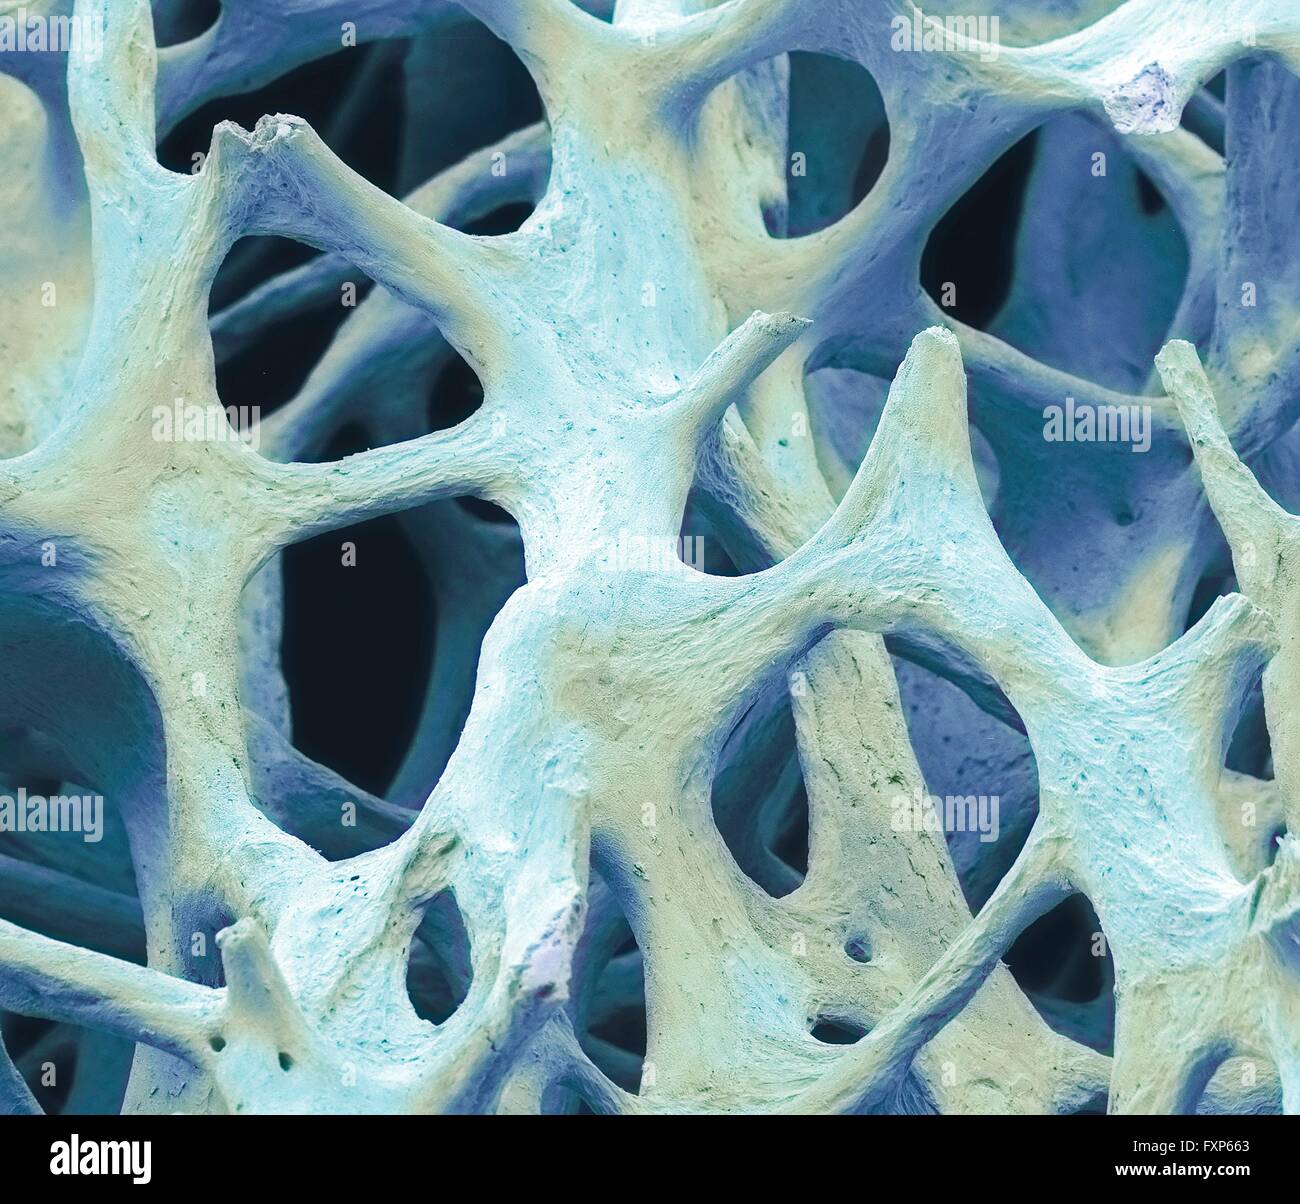 Le tissu osseux. Couleur de l'analyse des électrons Microphotographie (SEM) d'os spongieux (spongieux) os. Le tissu osseux peut être soit corticales (compact) ou d'os spongieux. L'os cortical fait généralement de l'extérieur de l'os, tandis que l'os spongieux se trouve dans l'intérieur. L'os spongieux se caractérise par un nid d'arrangement, comprenant un réseau de trabécules (forme de tige tissu). Ces structures offrent l'appui et la force de l'os. Les espaces au sein de ces tissus contiennent de la moelle osseuse (pas vu), une substance formant le sang. Grossissement : x40 lors de l'impression de 10 cm de largeur. Banque D'Images